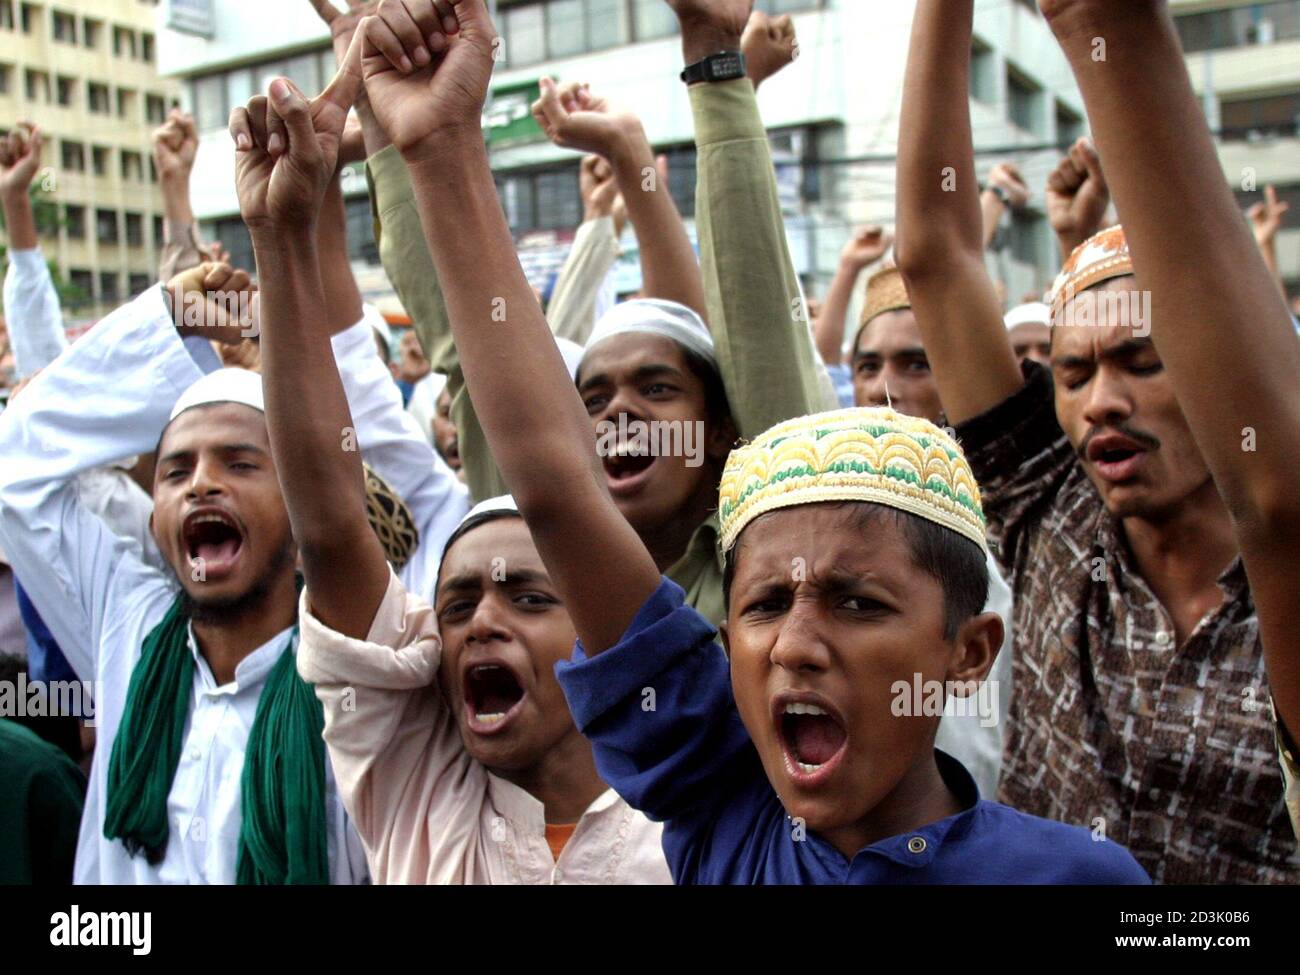 Los musulmanes bangladesíes cantan consignas contra los EE.UU. Durante una manifestación en Dhaka el 29 de julio de 2005. Miles de activistas islámicos de Bangladesh realizaron una ruidosa protesta en la capital Dhaka el viernes después de que un congresista estadounidense sugirió que Estados Unidos podría considerar bombardear sitios sagrados, incluyendo la Meca. El representante Tom Tancredo (R-CO) hizo el comentario el 14 de julio en respuesta a la pregunta de un presentador de radio sobre una posible respuesta a cualquier hipotético ataque terrorista nuclear contra la REUTERS/Rafiqur Rahman DCS/KS de EE.UU Foto de stock